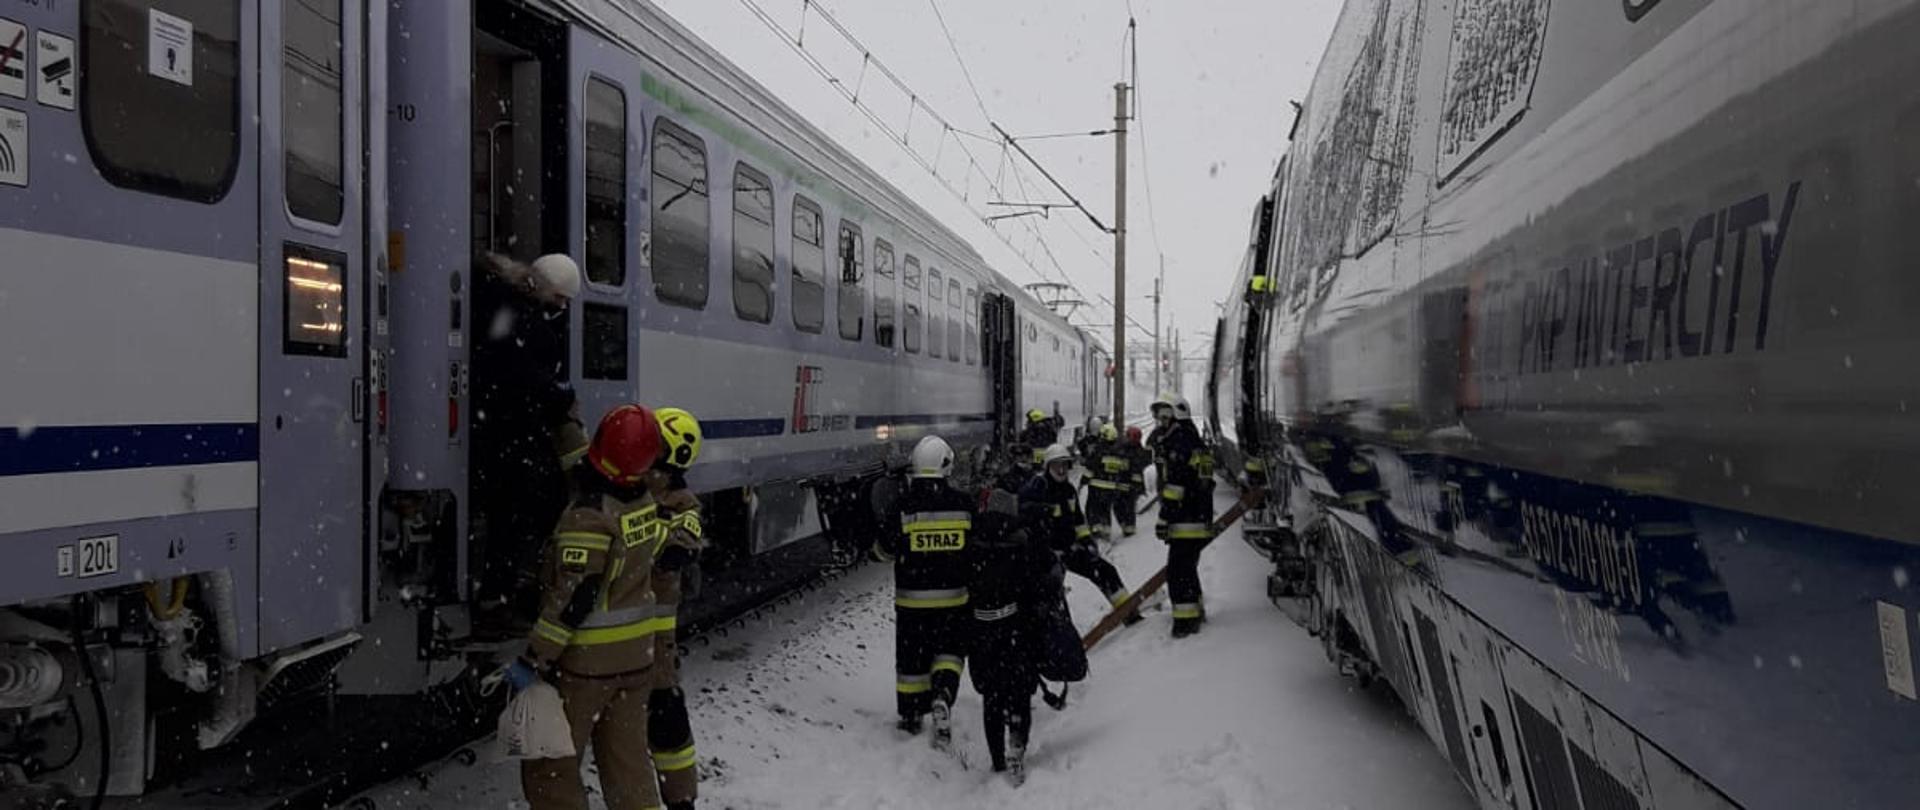 Działania włoszczowskich strażaków - pomoc pasażerom w trudnych warunkach pogodowych przy przesiadce w szczerym polu z pociągu do pociągu